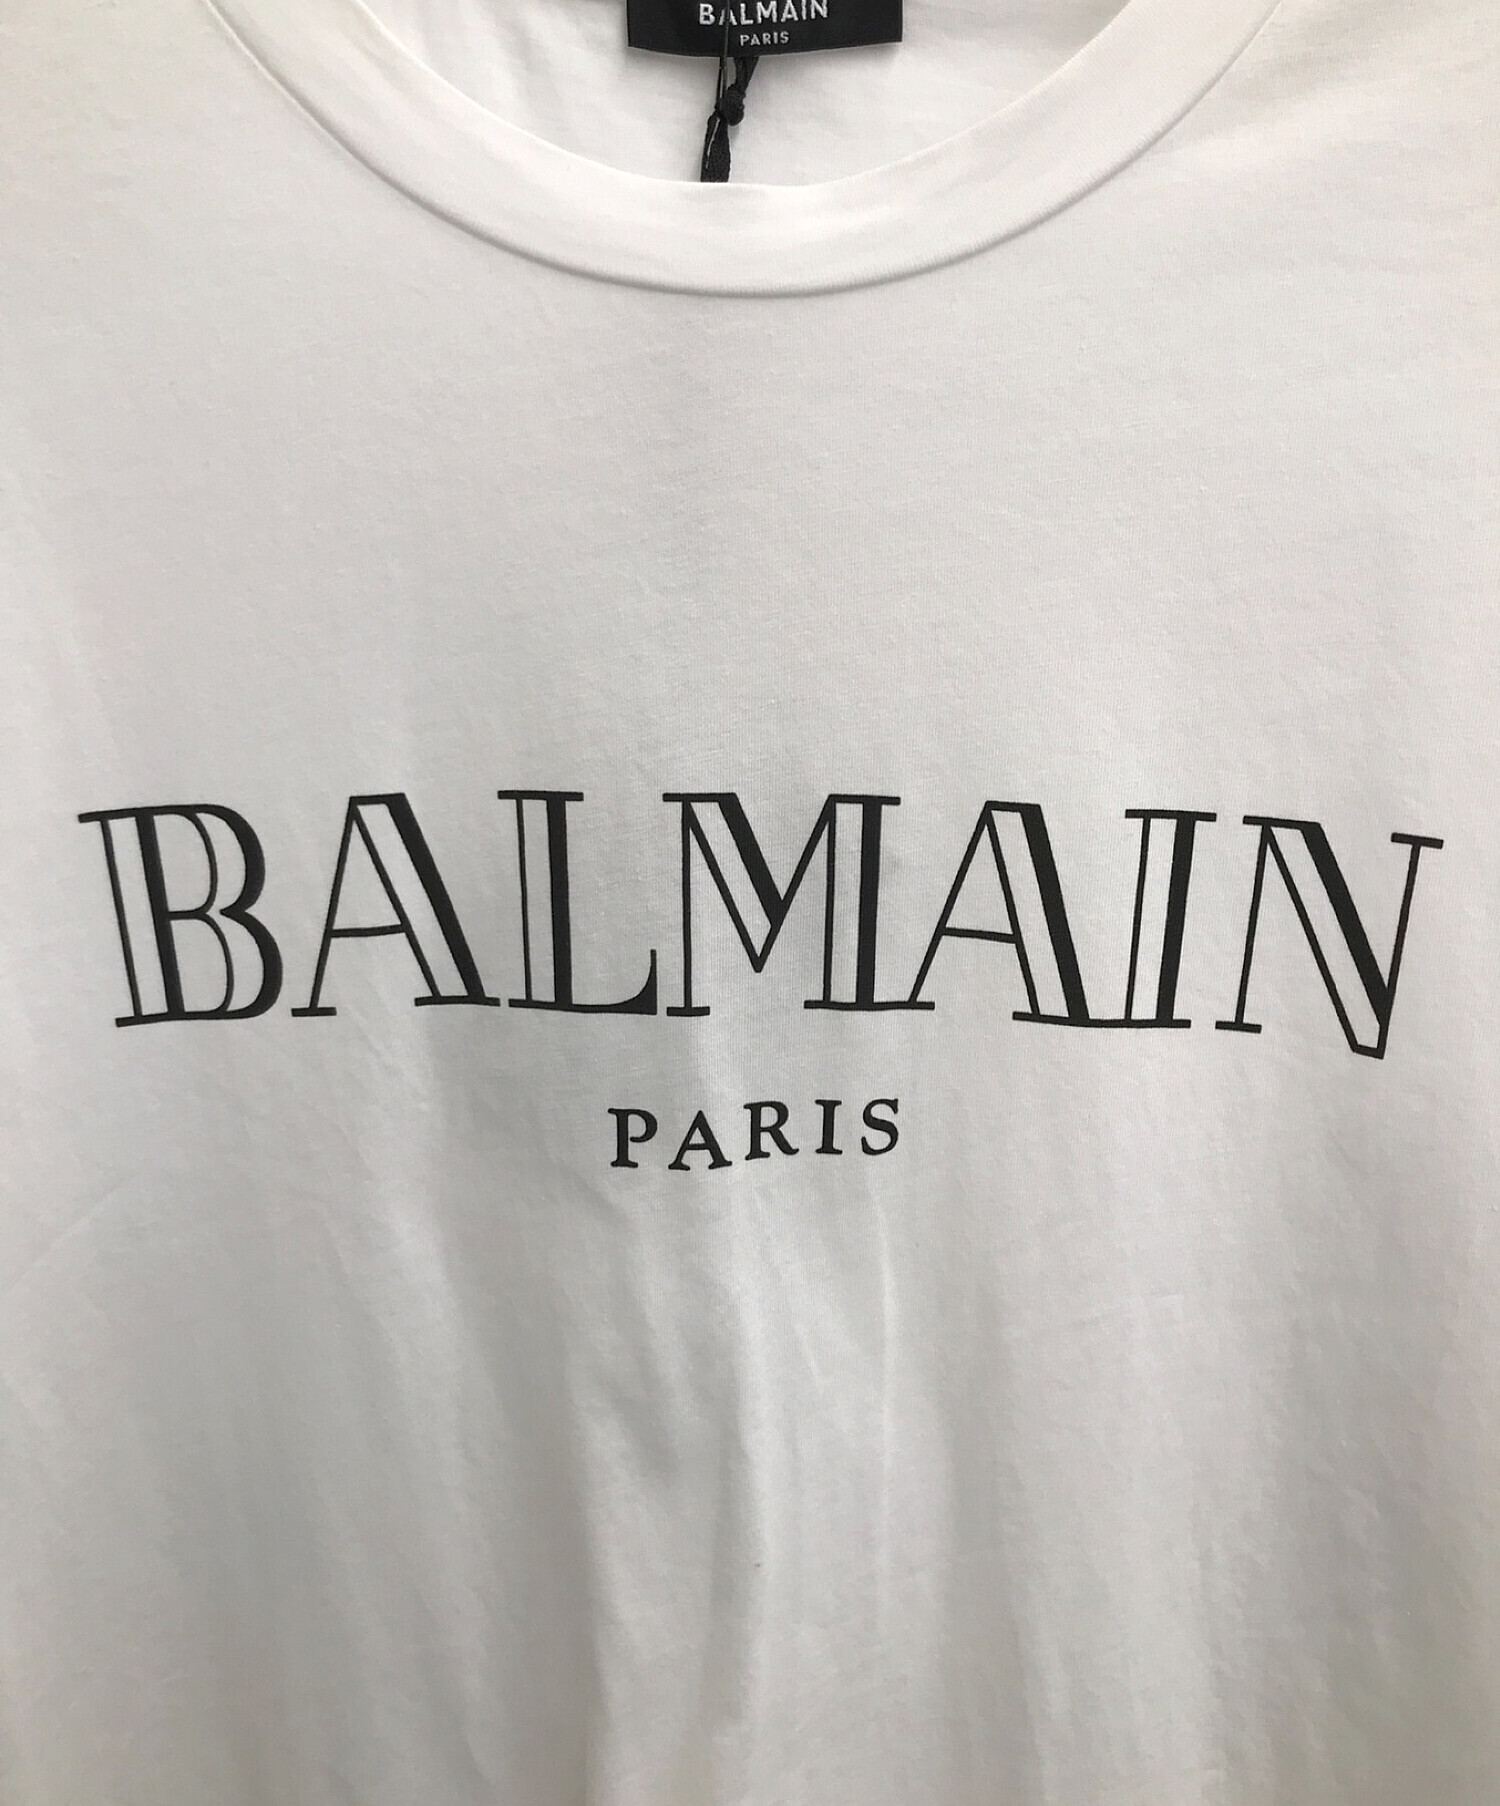 BALMAIN (バルマン) ロゴTシャツ ホワイト×ブラック サイズ:L